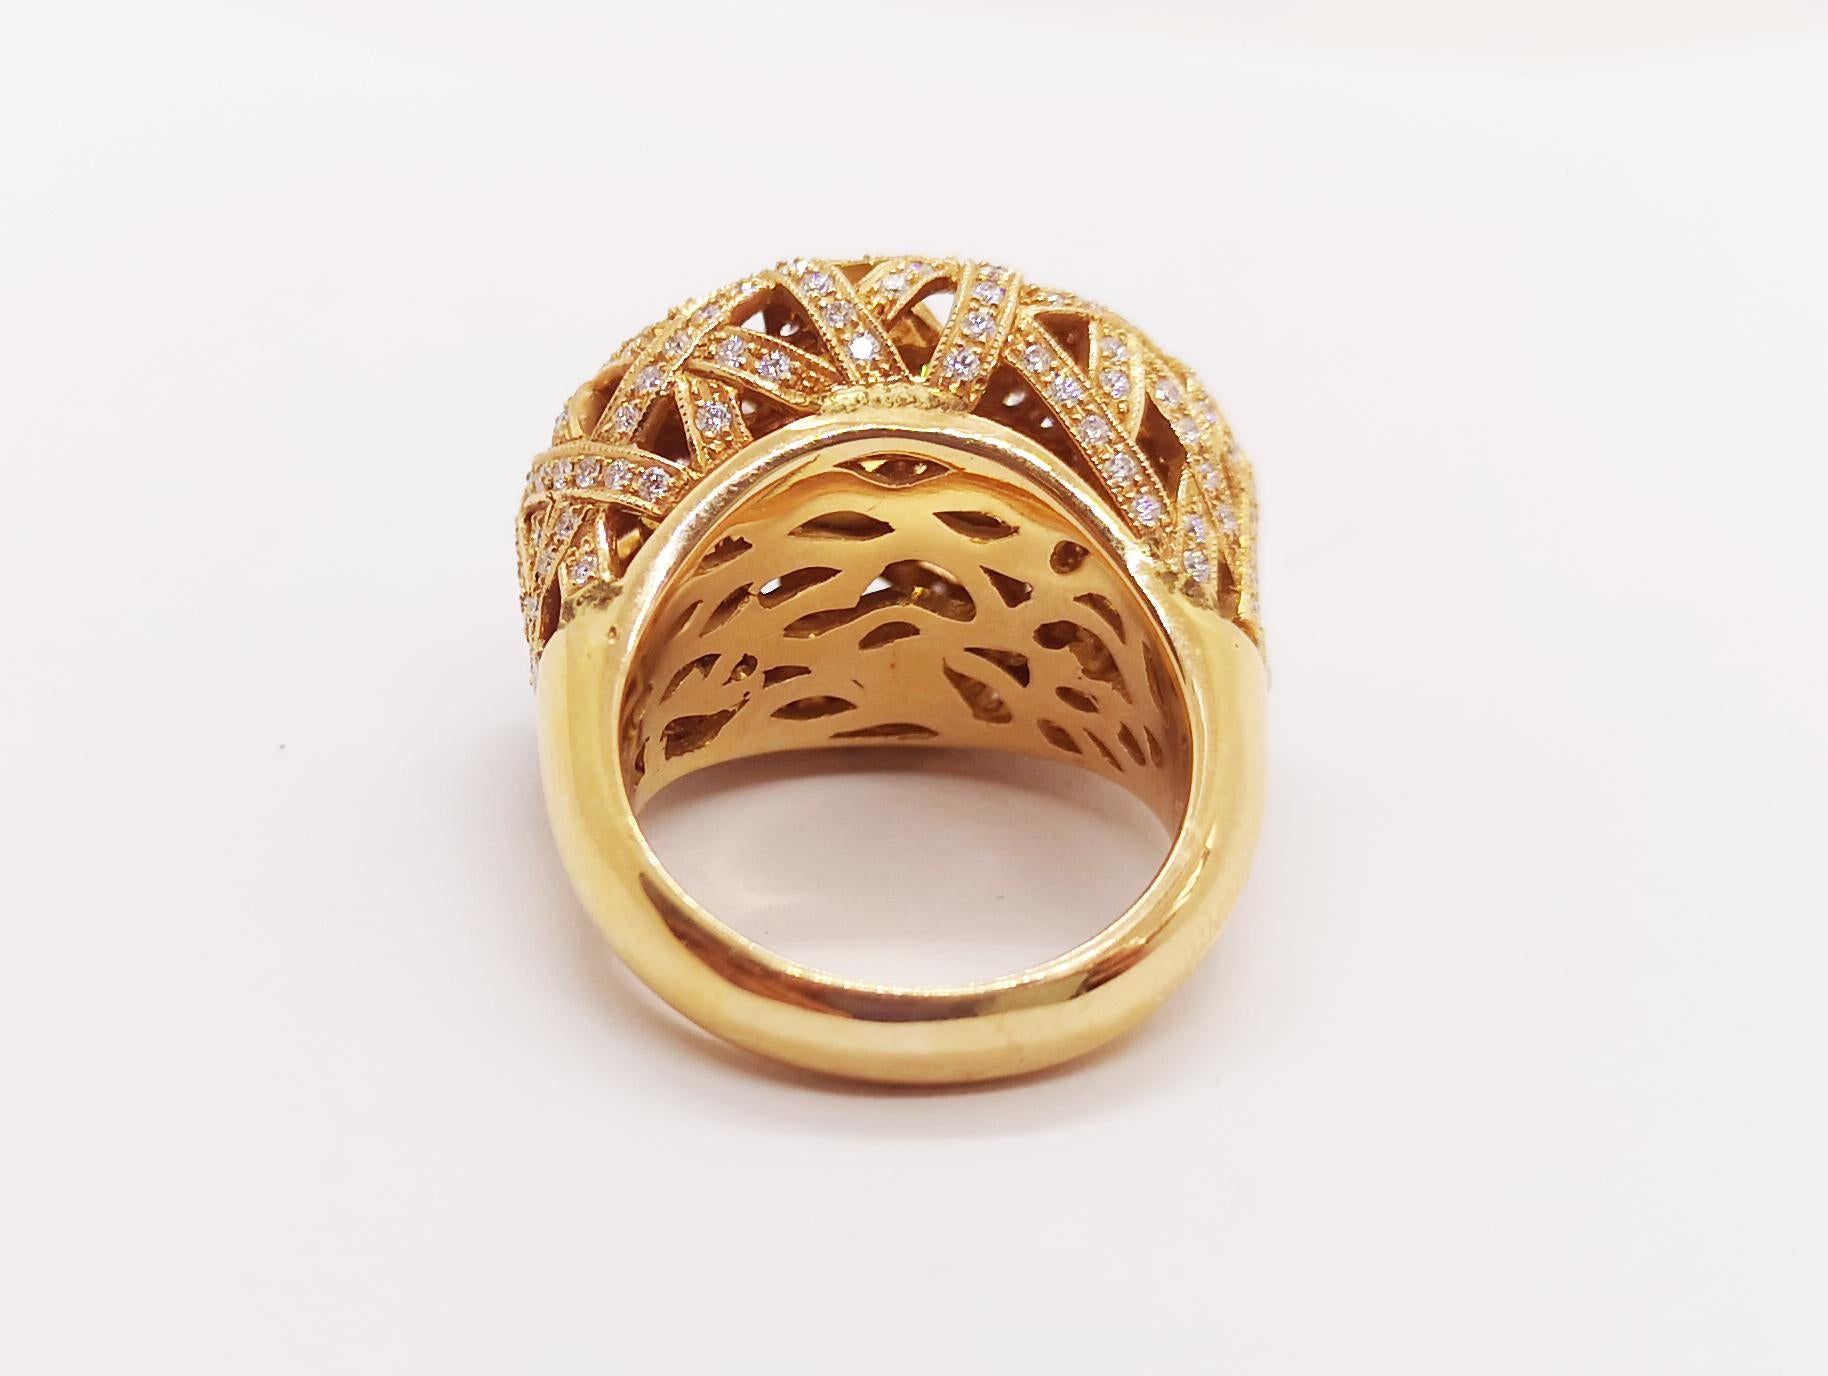 Blauer Saphir 3,38 Karat mit Diamant 1,22 Karat Ring Set in 18 Karat Rose Gold Fassung 

Breite: 2,5 cm
Länge: 2,0 cm 
Ringgröße: 54

